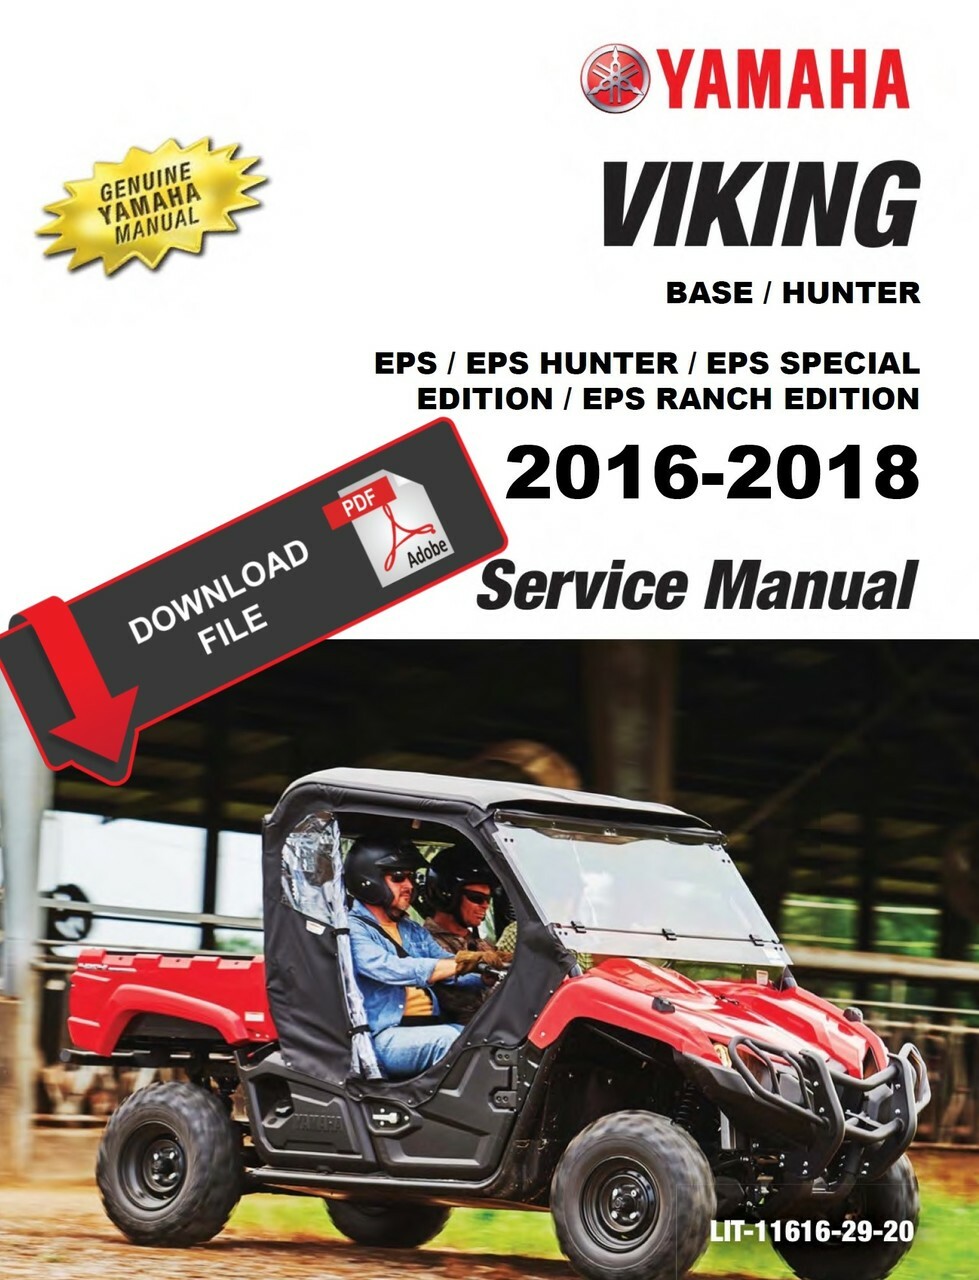 Viking range service manual